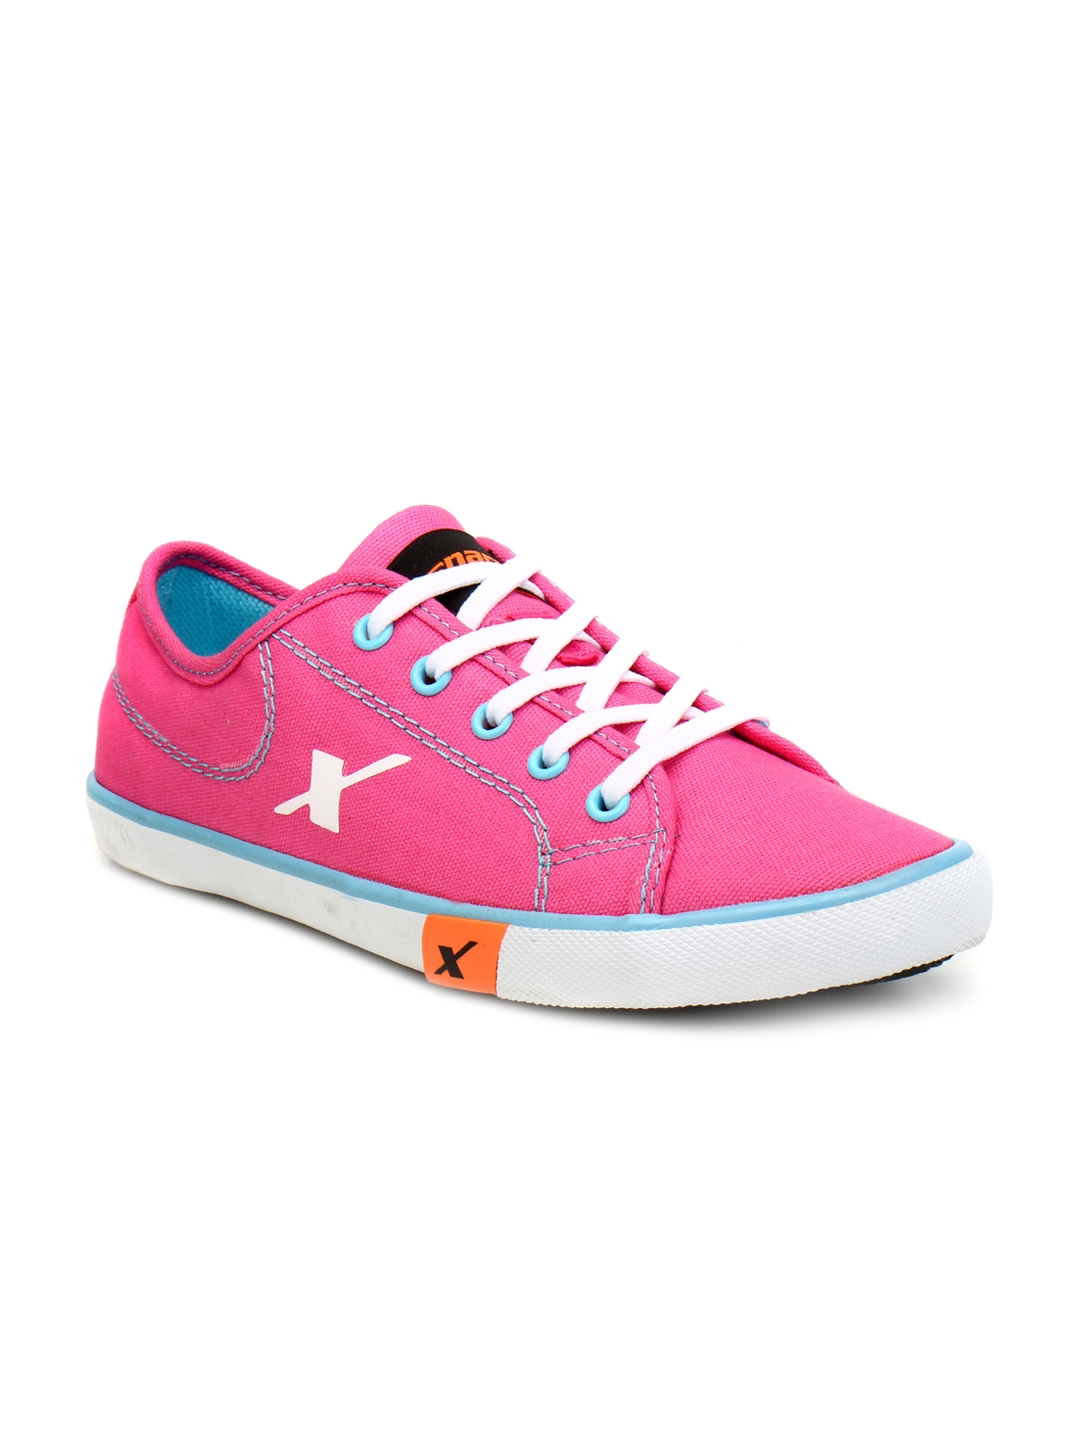 Buy Sparx Women Pink Sneakers - Casual 